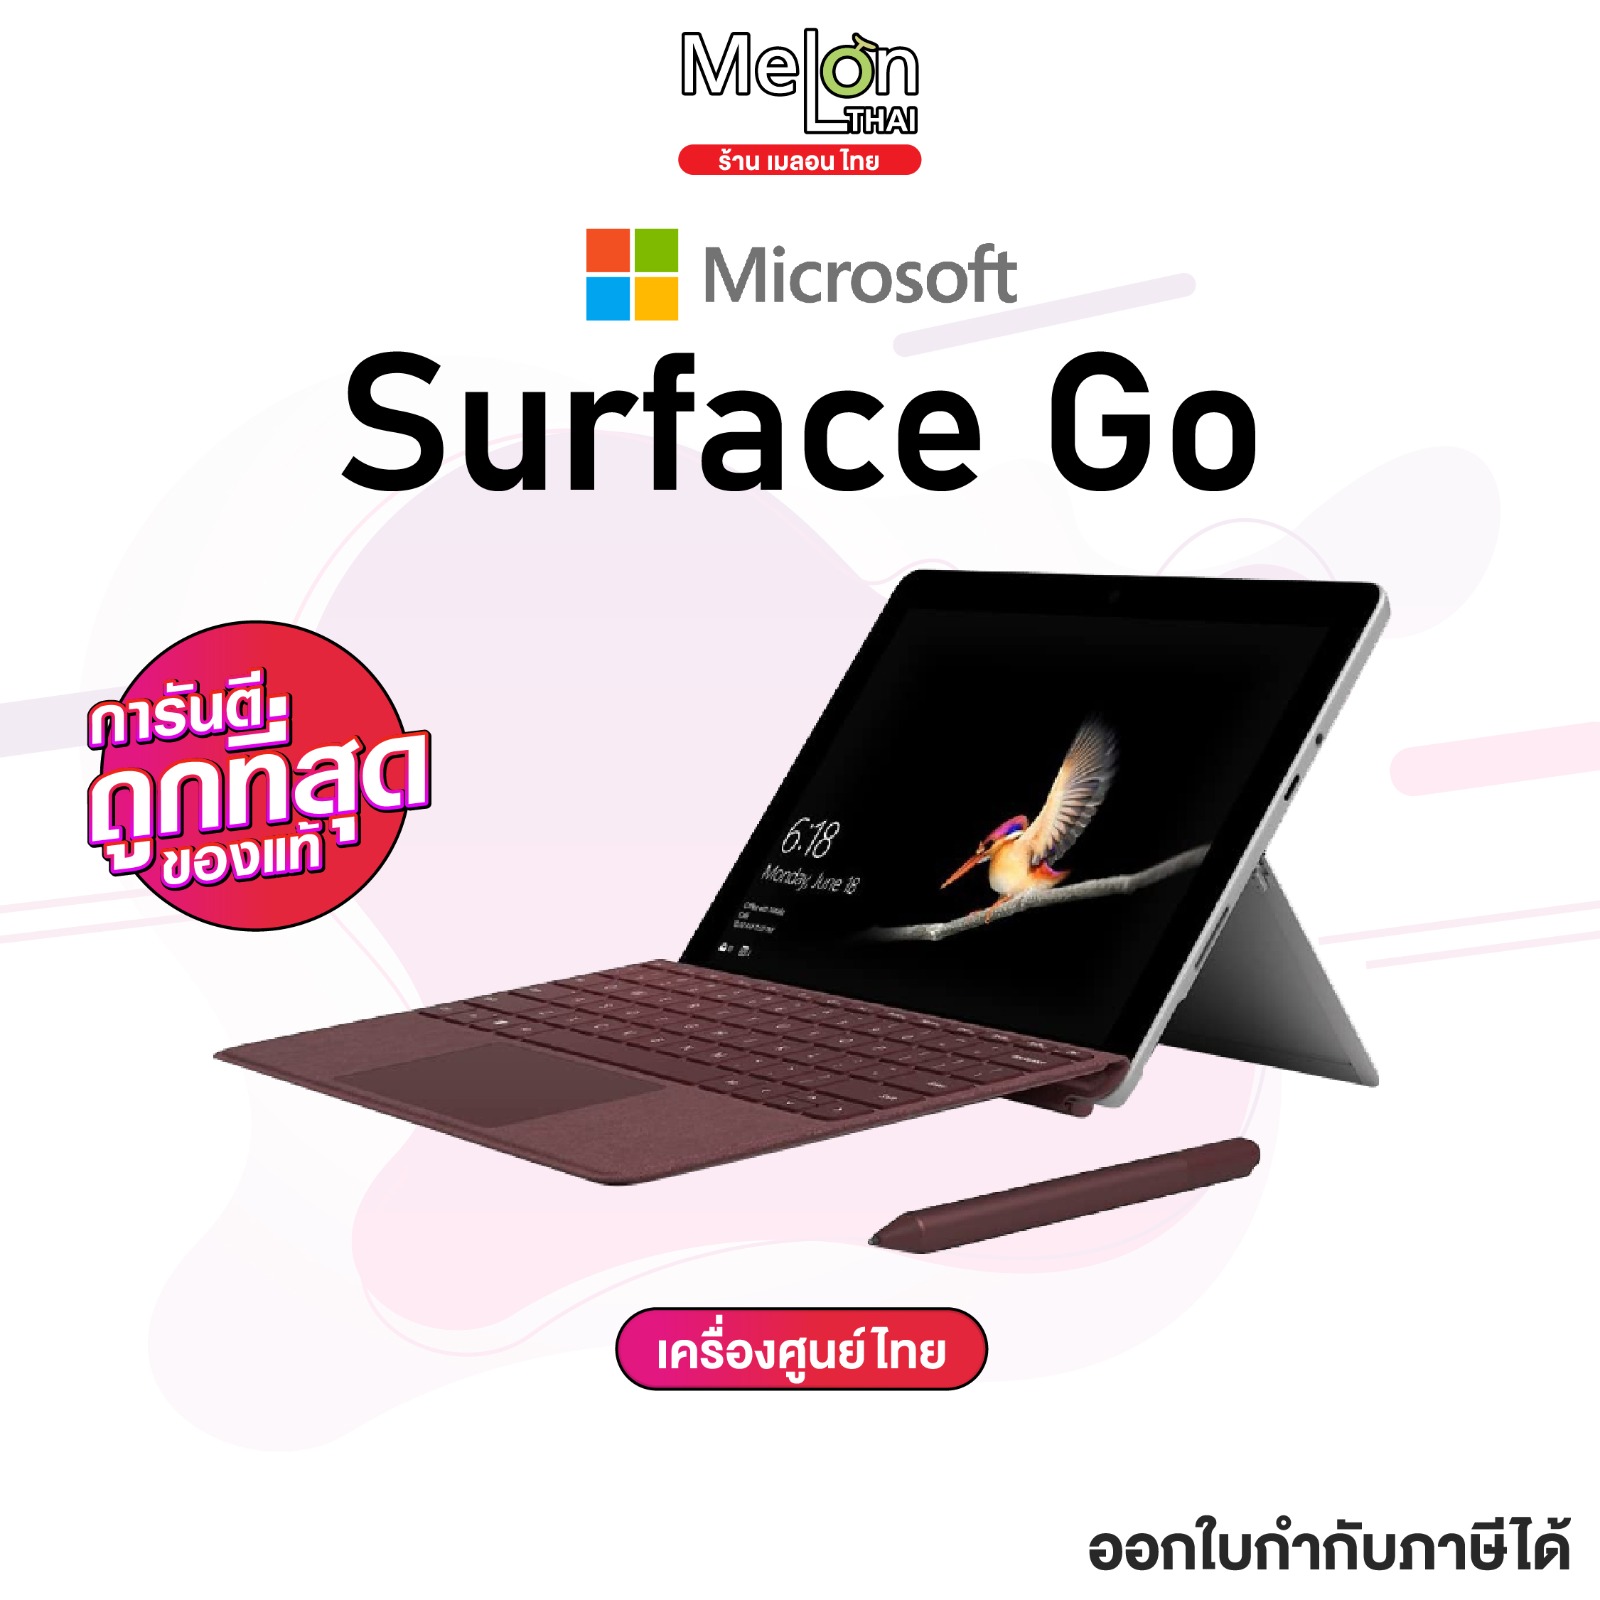 เเล็ปท็อป Microsoft Surface Go สี Silver เครื่องใหม่ ศูนย์ไทย ประกันร้าน 1 ปี ออกใบกำกับภาษีได้ ใช้งาน 2 in 1 บางเบา พกพาง่าย จอ 10 นิ้ว LTE 4415Y